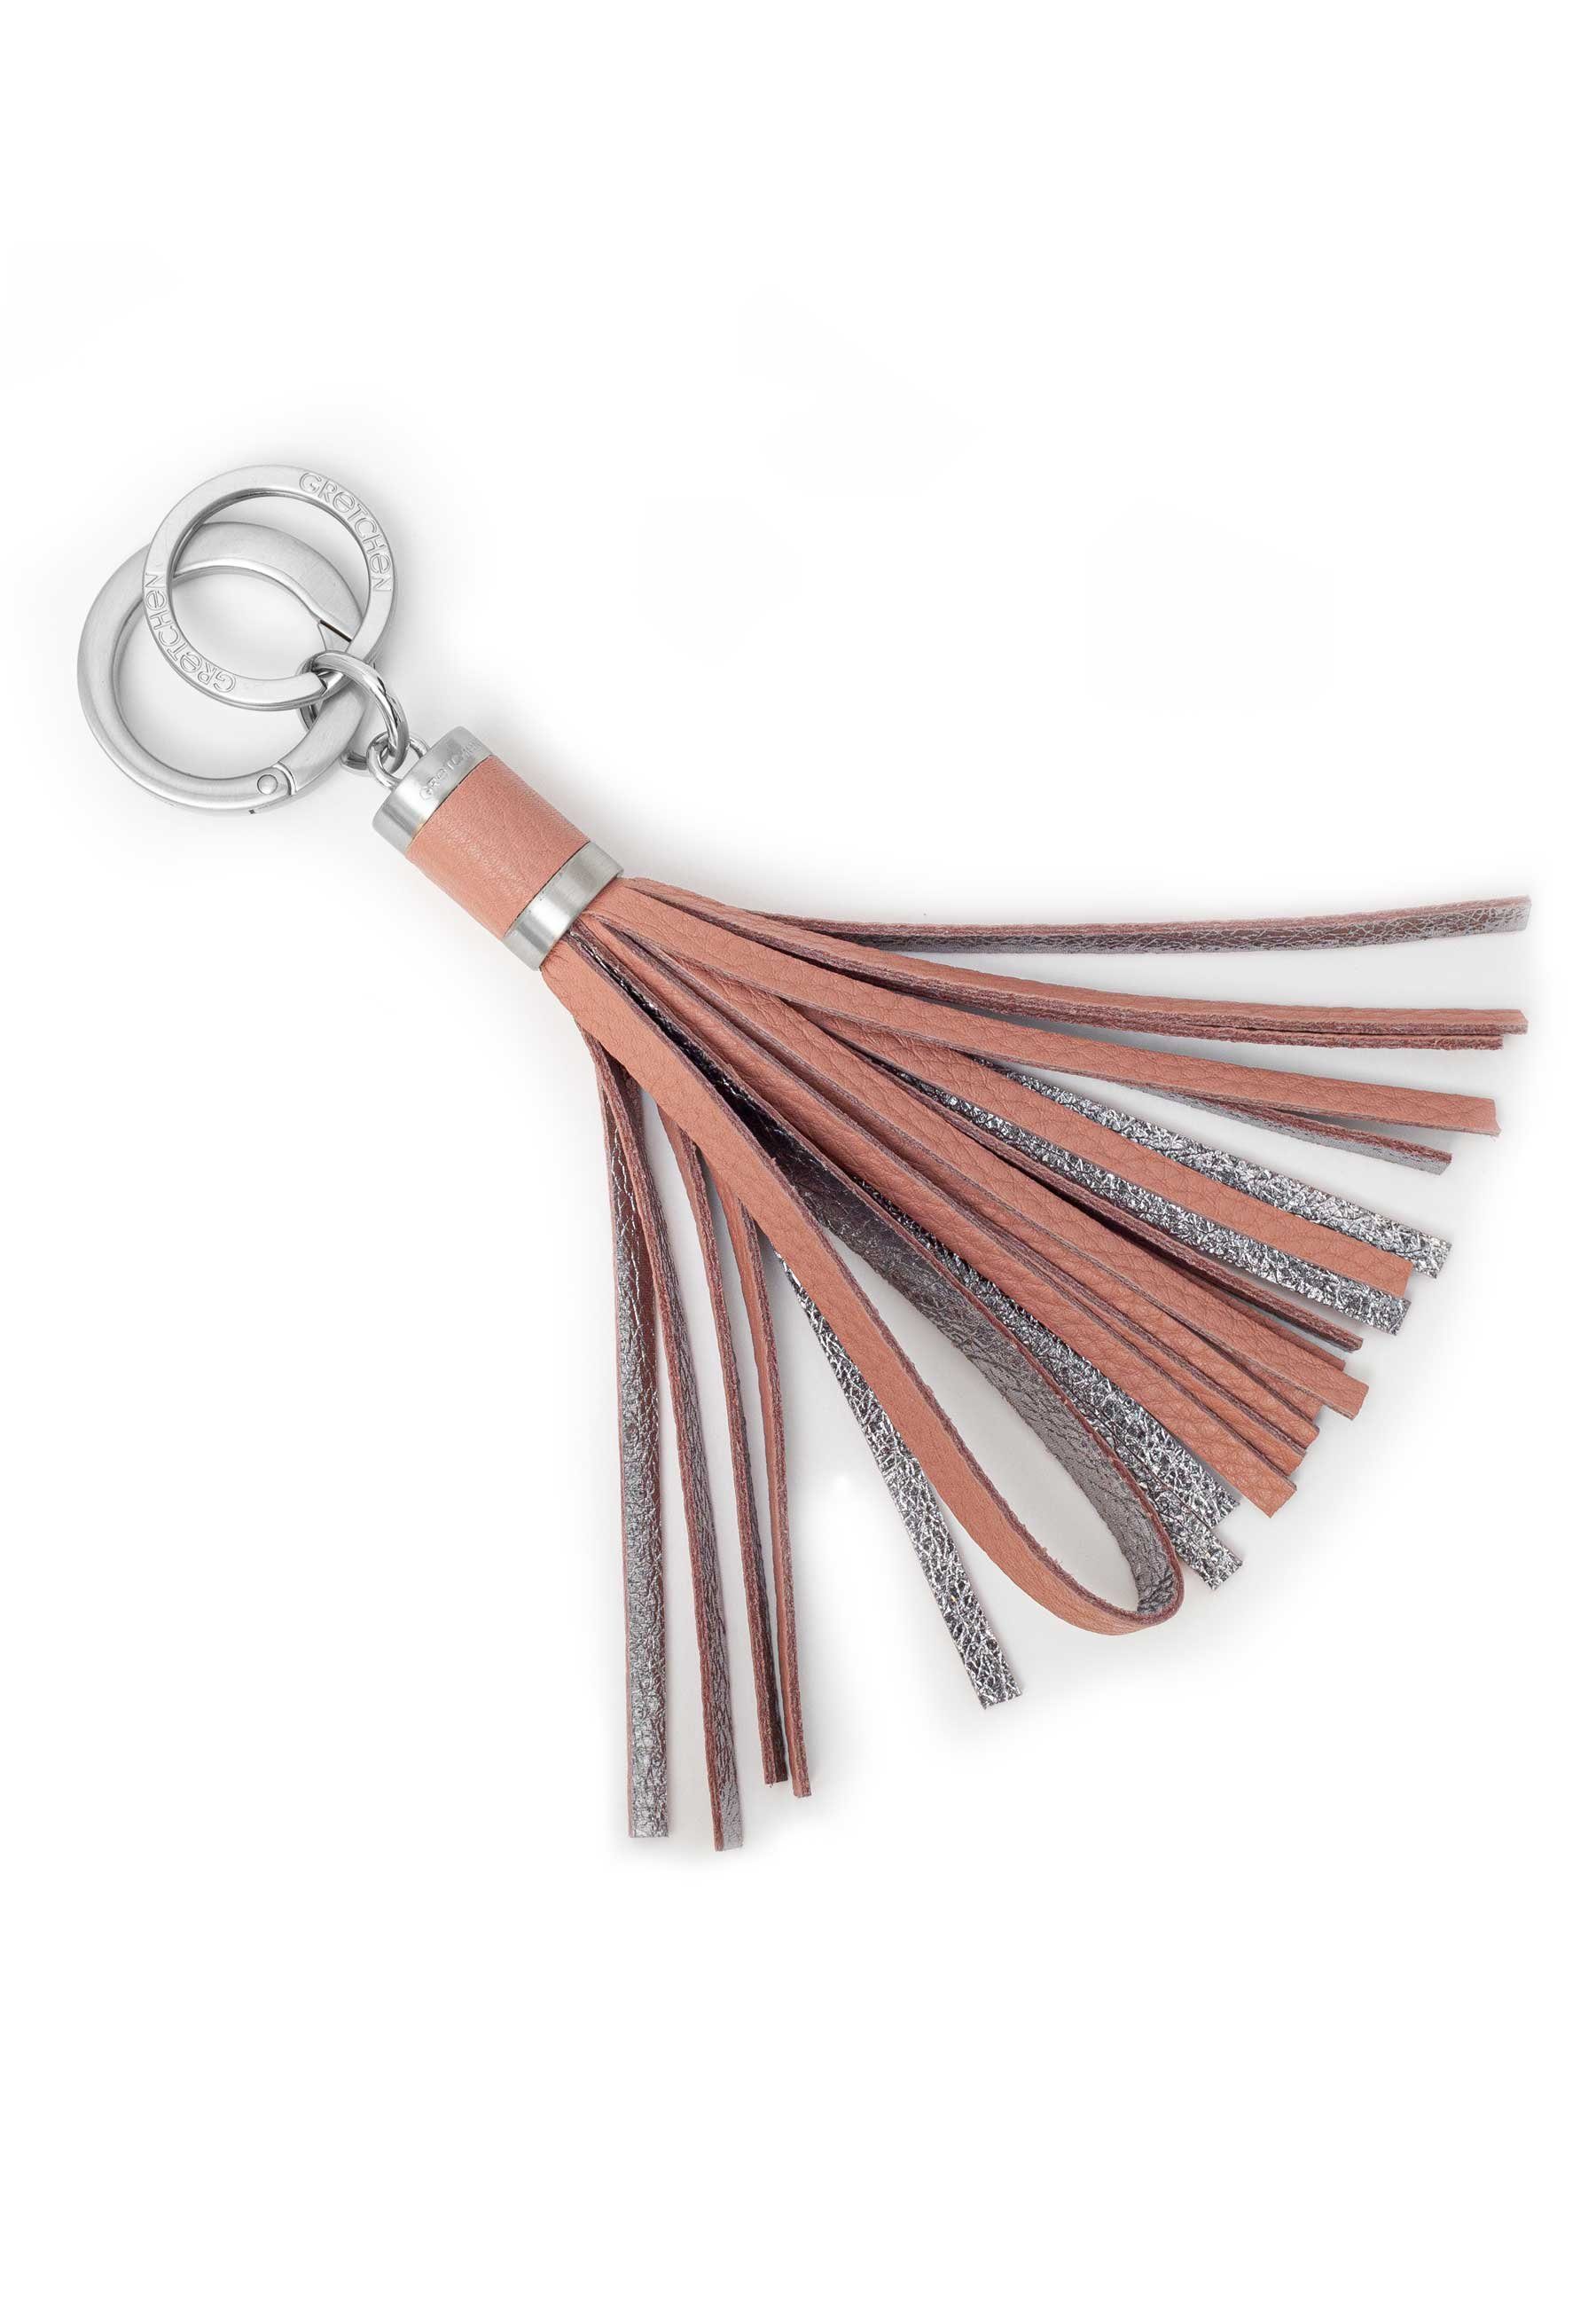 Neue Ankünfte dieser Saison! GRETCHEN Schlüsselanhänger Tassel Keyring, Kalbsleder rosa-silberfarben aus italienischem